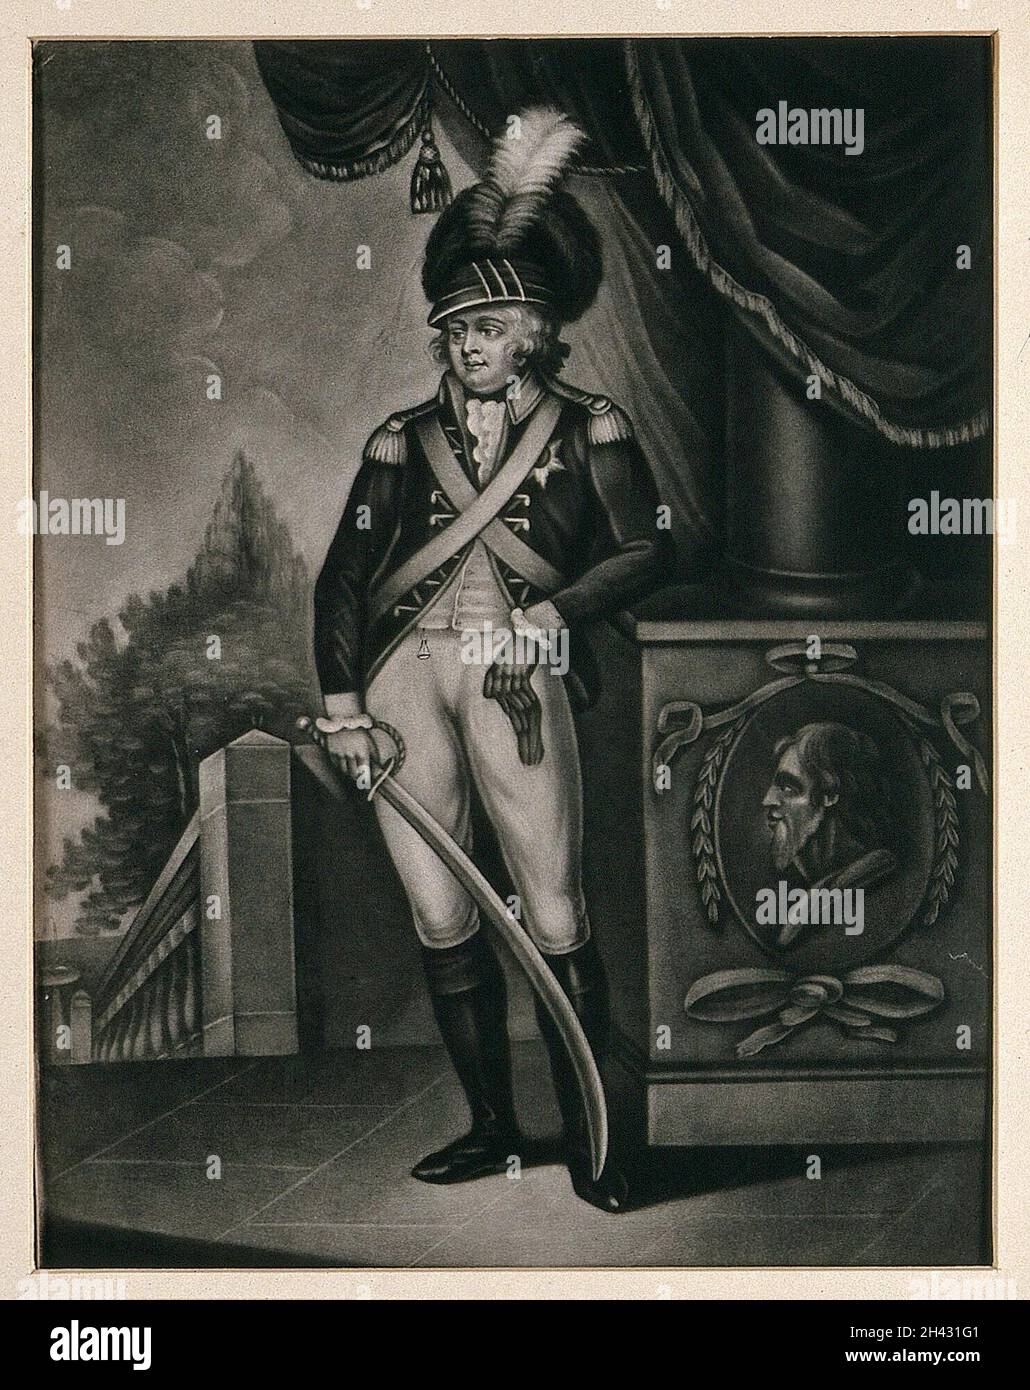 Roi George IV comme prince de Galles, portant un uniforme militaire et tenant une épée.Mezzotint, 1800. Banque D'Images